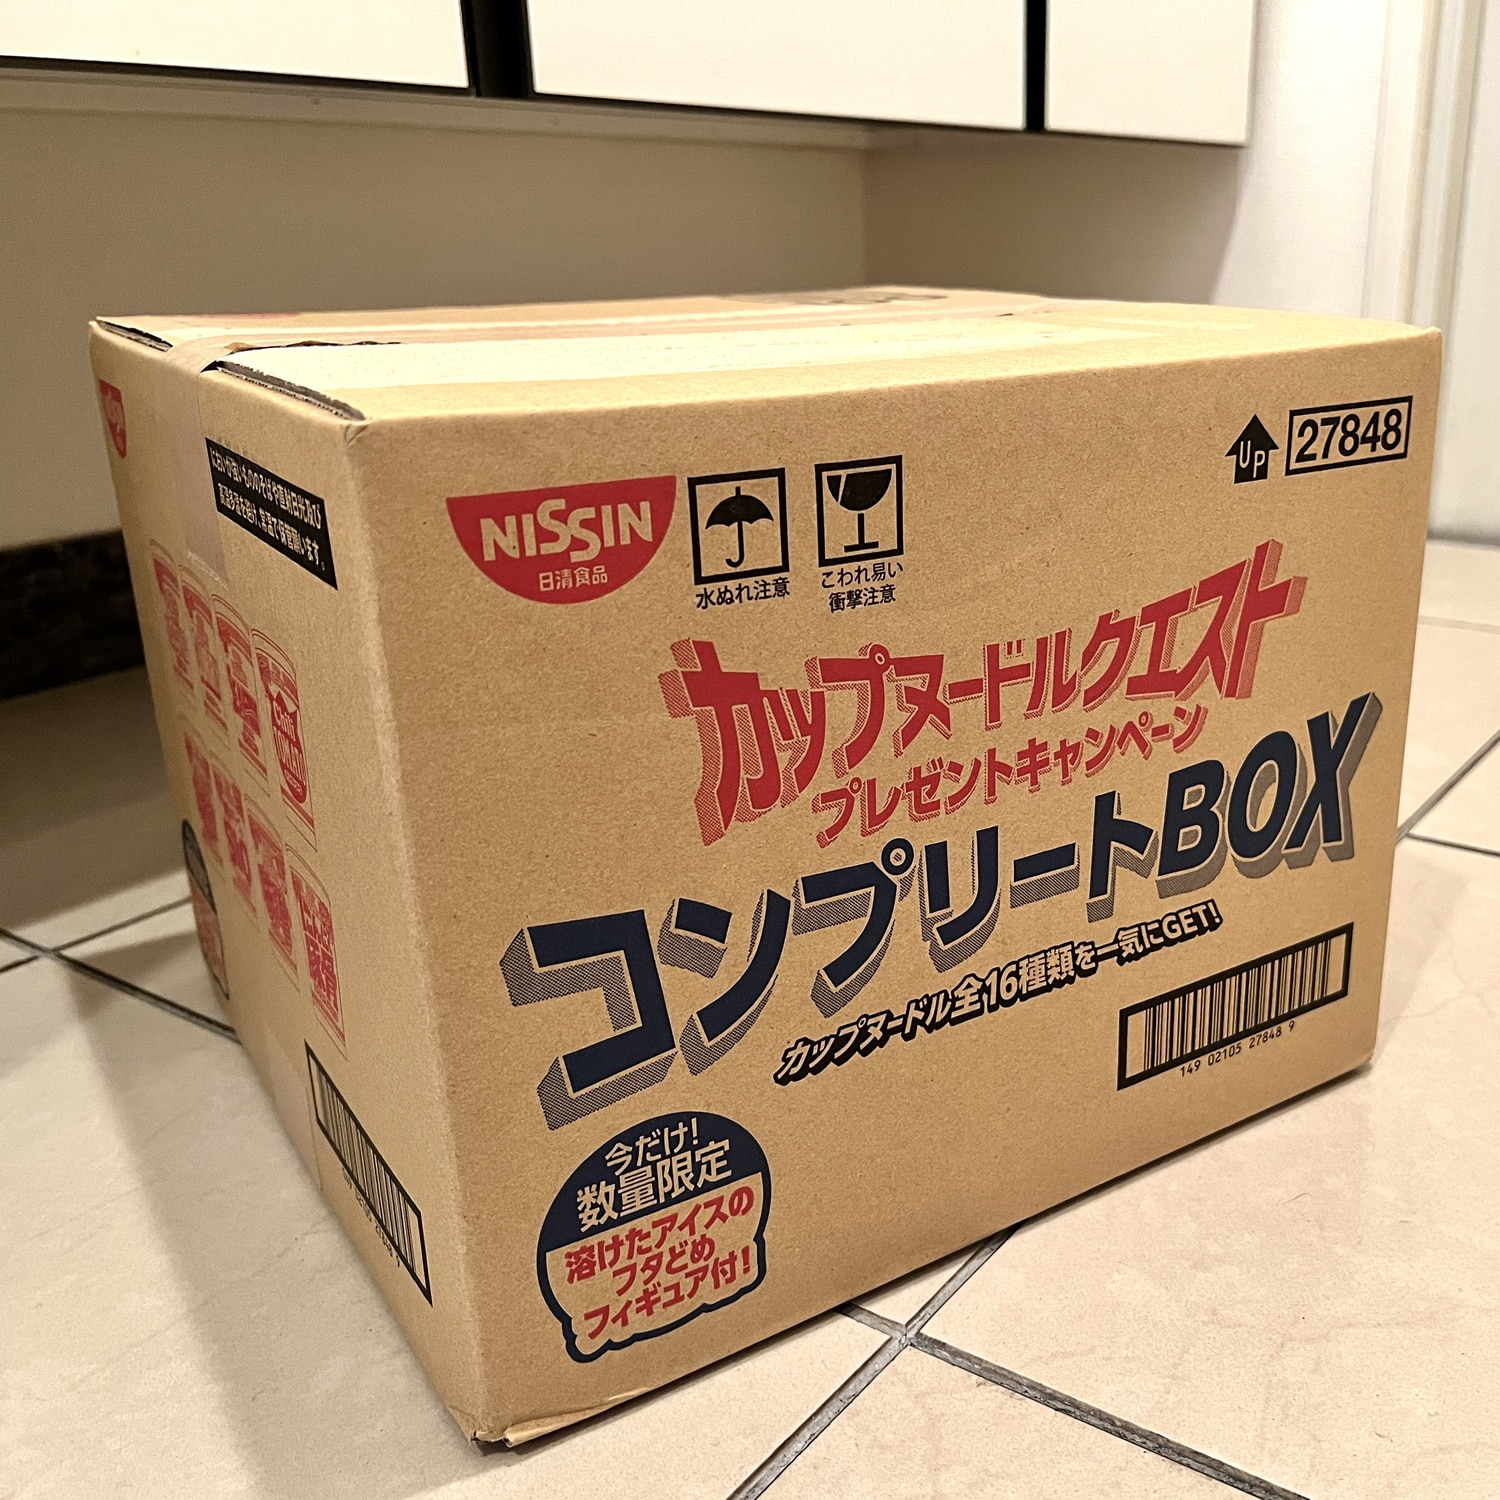 【日本廉価】カップヌードルクエスト コンプリートBOX3箱セット 【24時間以内発送】 その他 加工食品